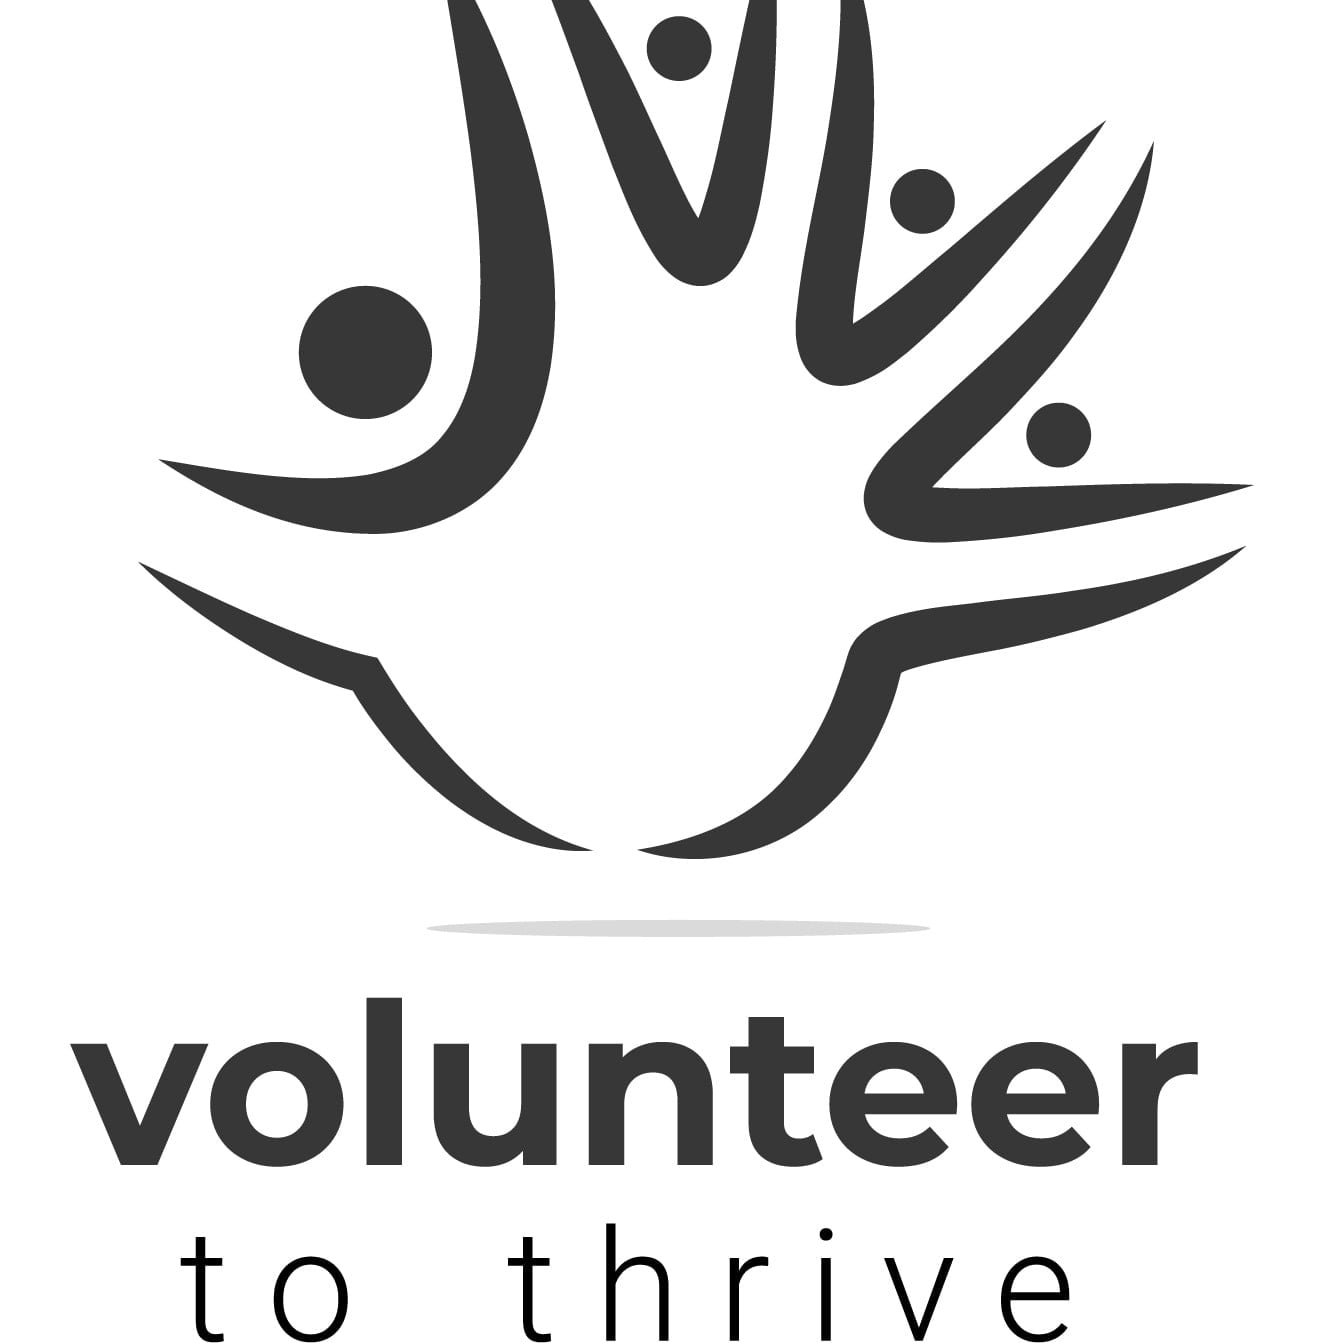 volunteer-to-thrive-volunteer-opportunities-volunteermatch